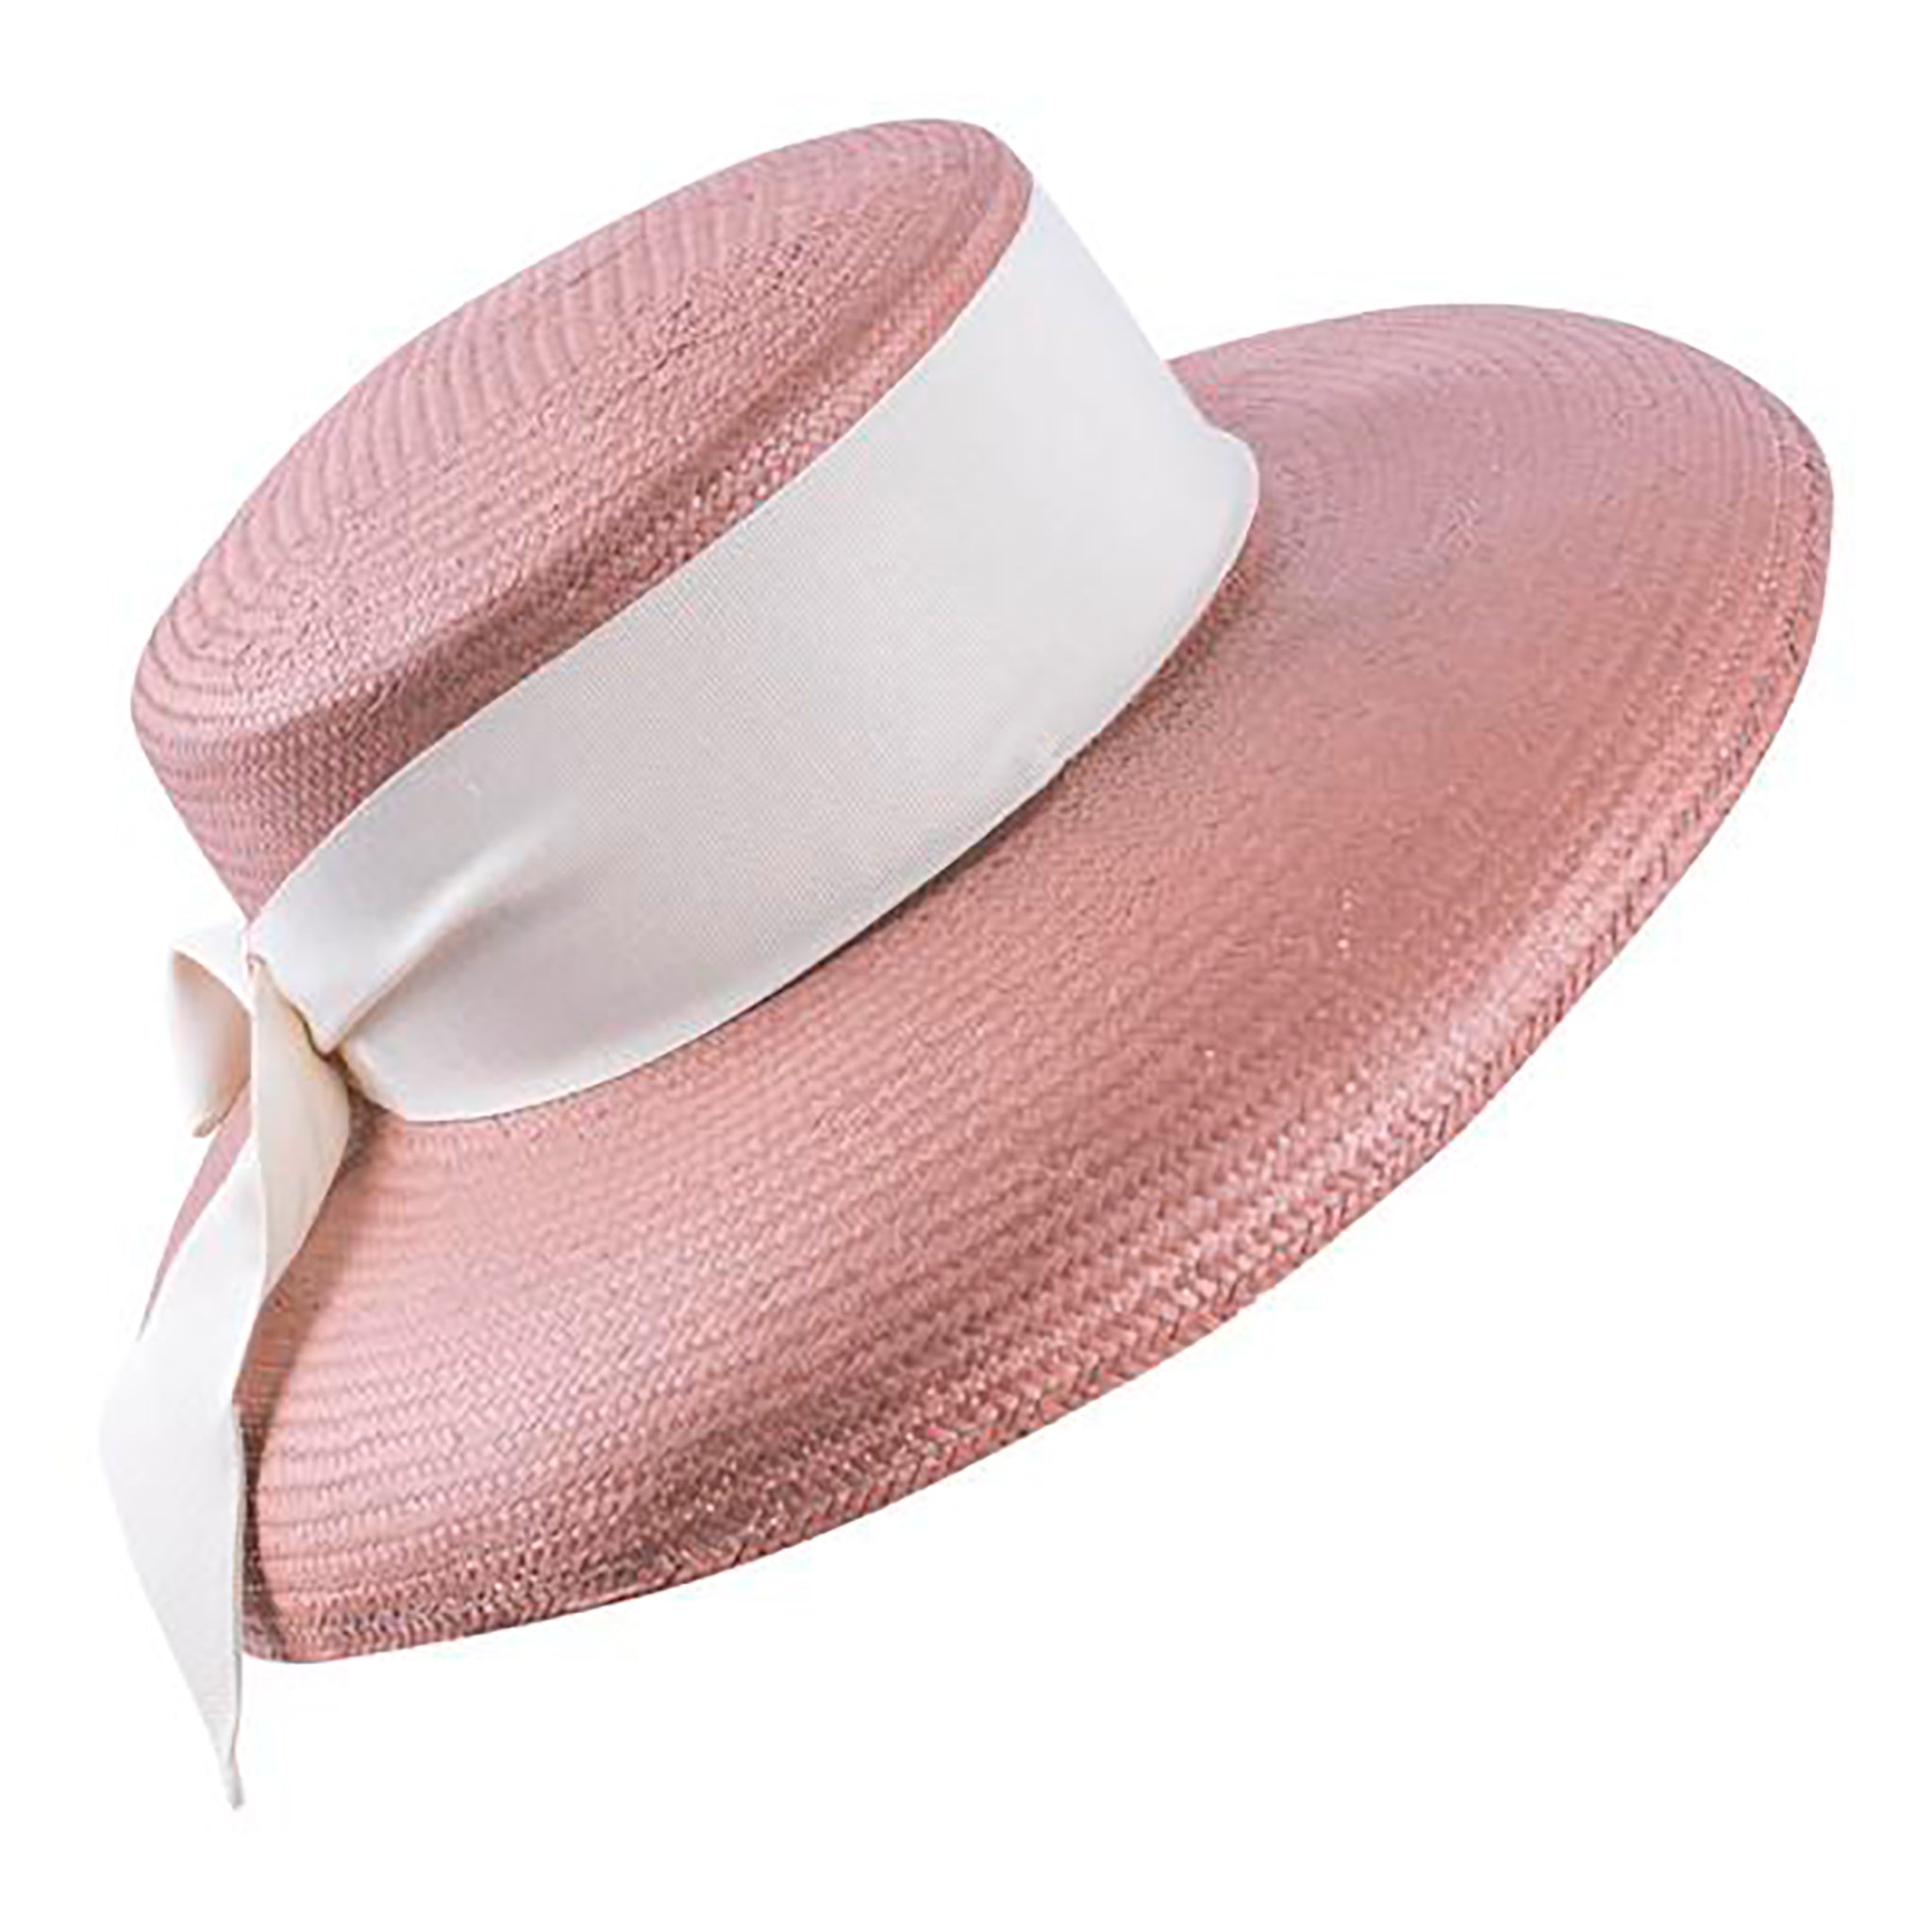 Kati Niemen leveälierinen hattu. Väri pinkki / ruskea. Somisteena valkoinen, leveä nauha ja rusetti.